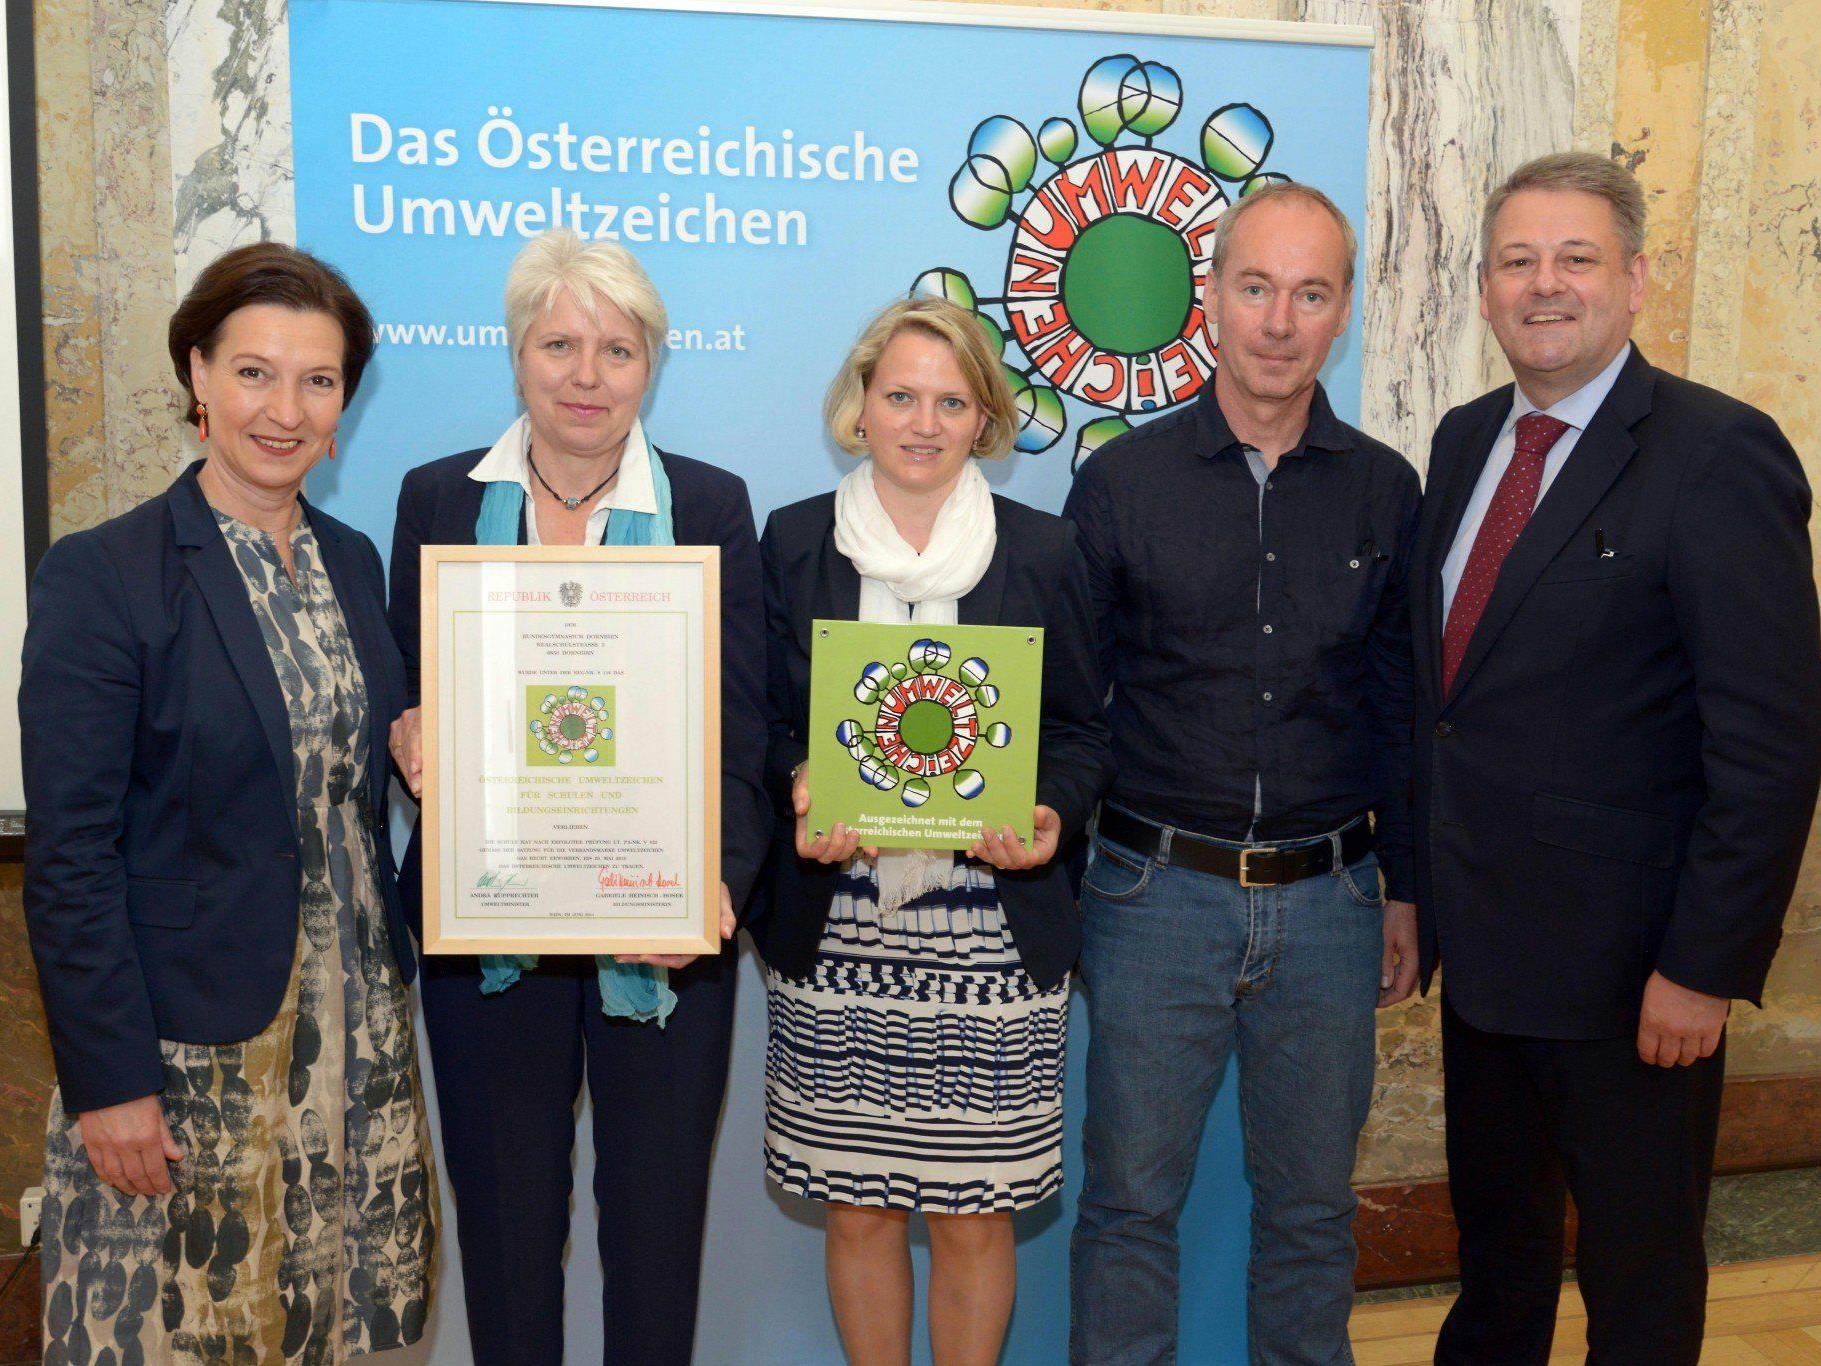 Erika Schuster, Ulrike Matiz und Stefan Birkel brachten die Auszeichnung aus Wien mit.